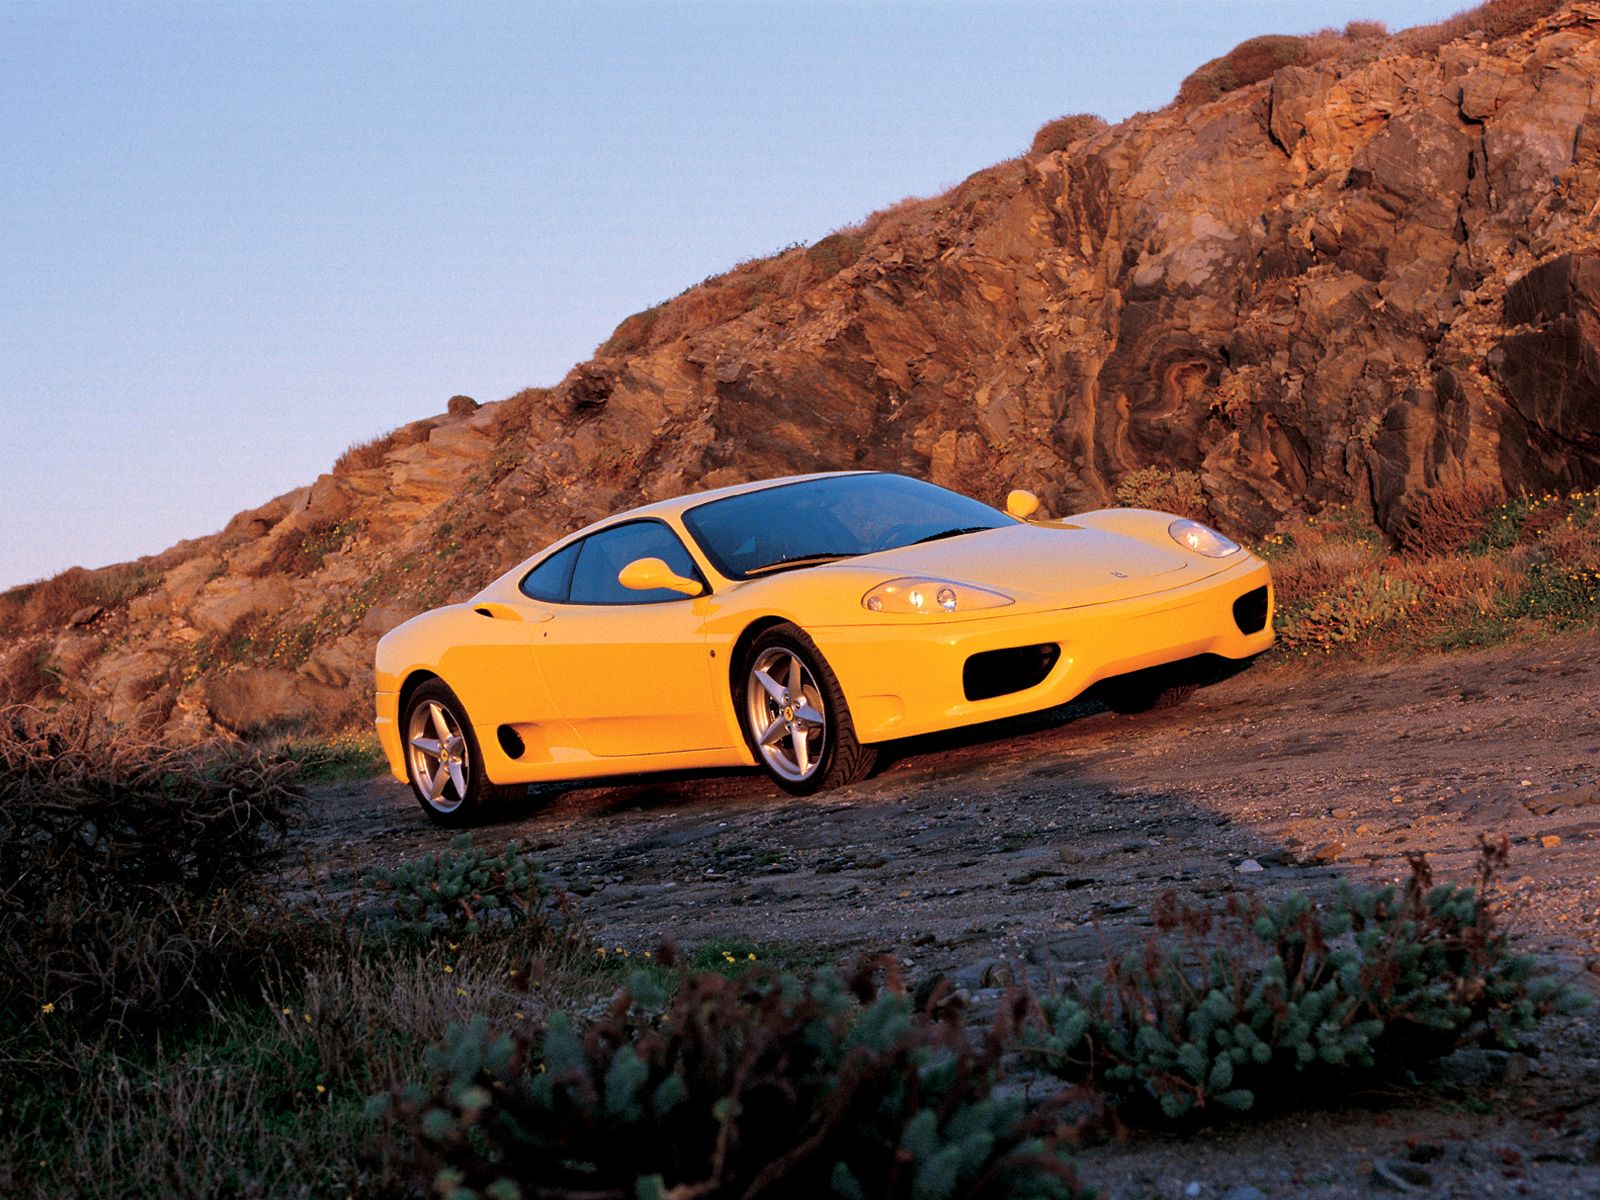 http://3.bp.blogspot.com/_uTGKd6u5pJ4/TRw2fV_-PQI/AAAAAAAAAQs/C6_qwCDLRjA/s1600/Yellow-Ferrari-360-Modena-Wallpaper.jpg